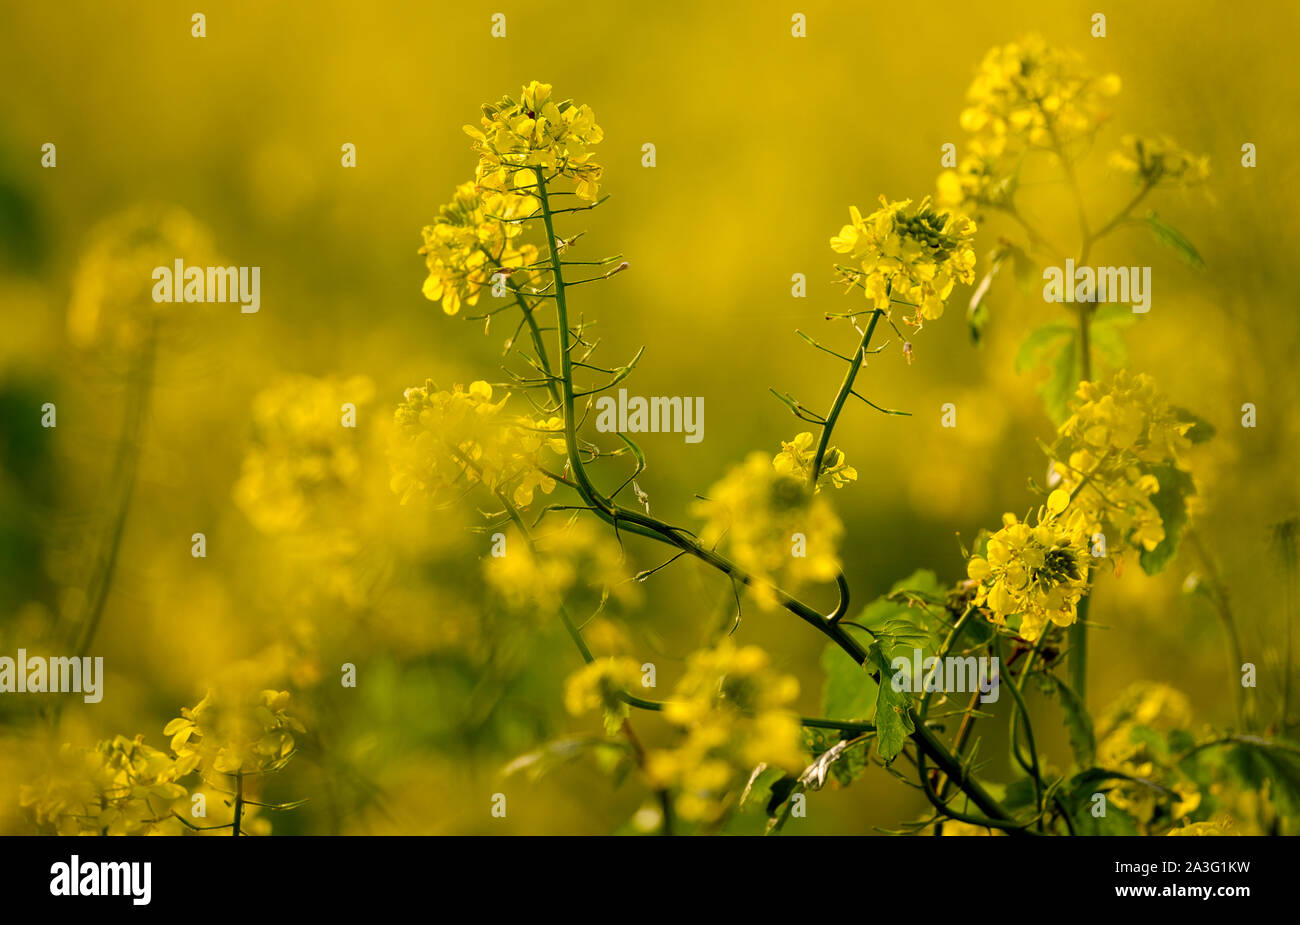 La primavera se congela fotografías e imágenes de alta resolución - Alamy